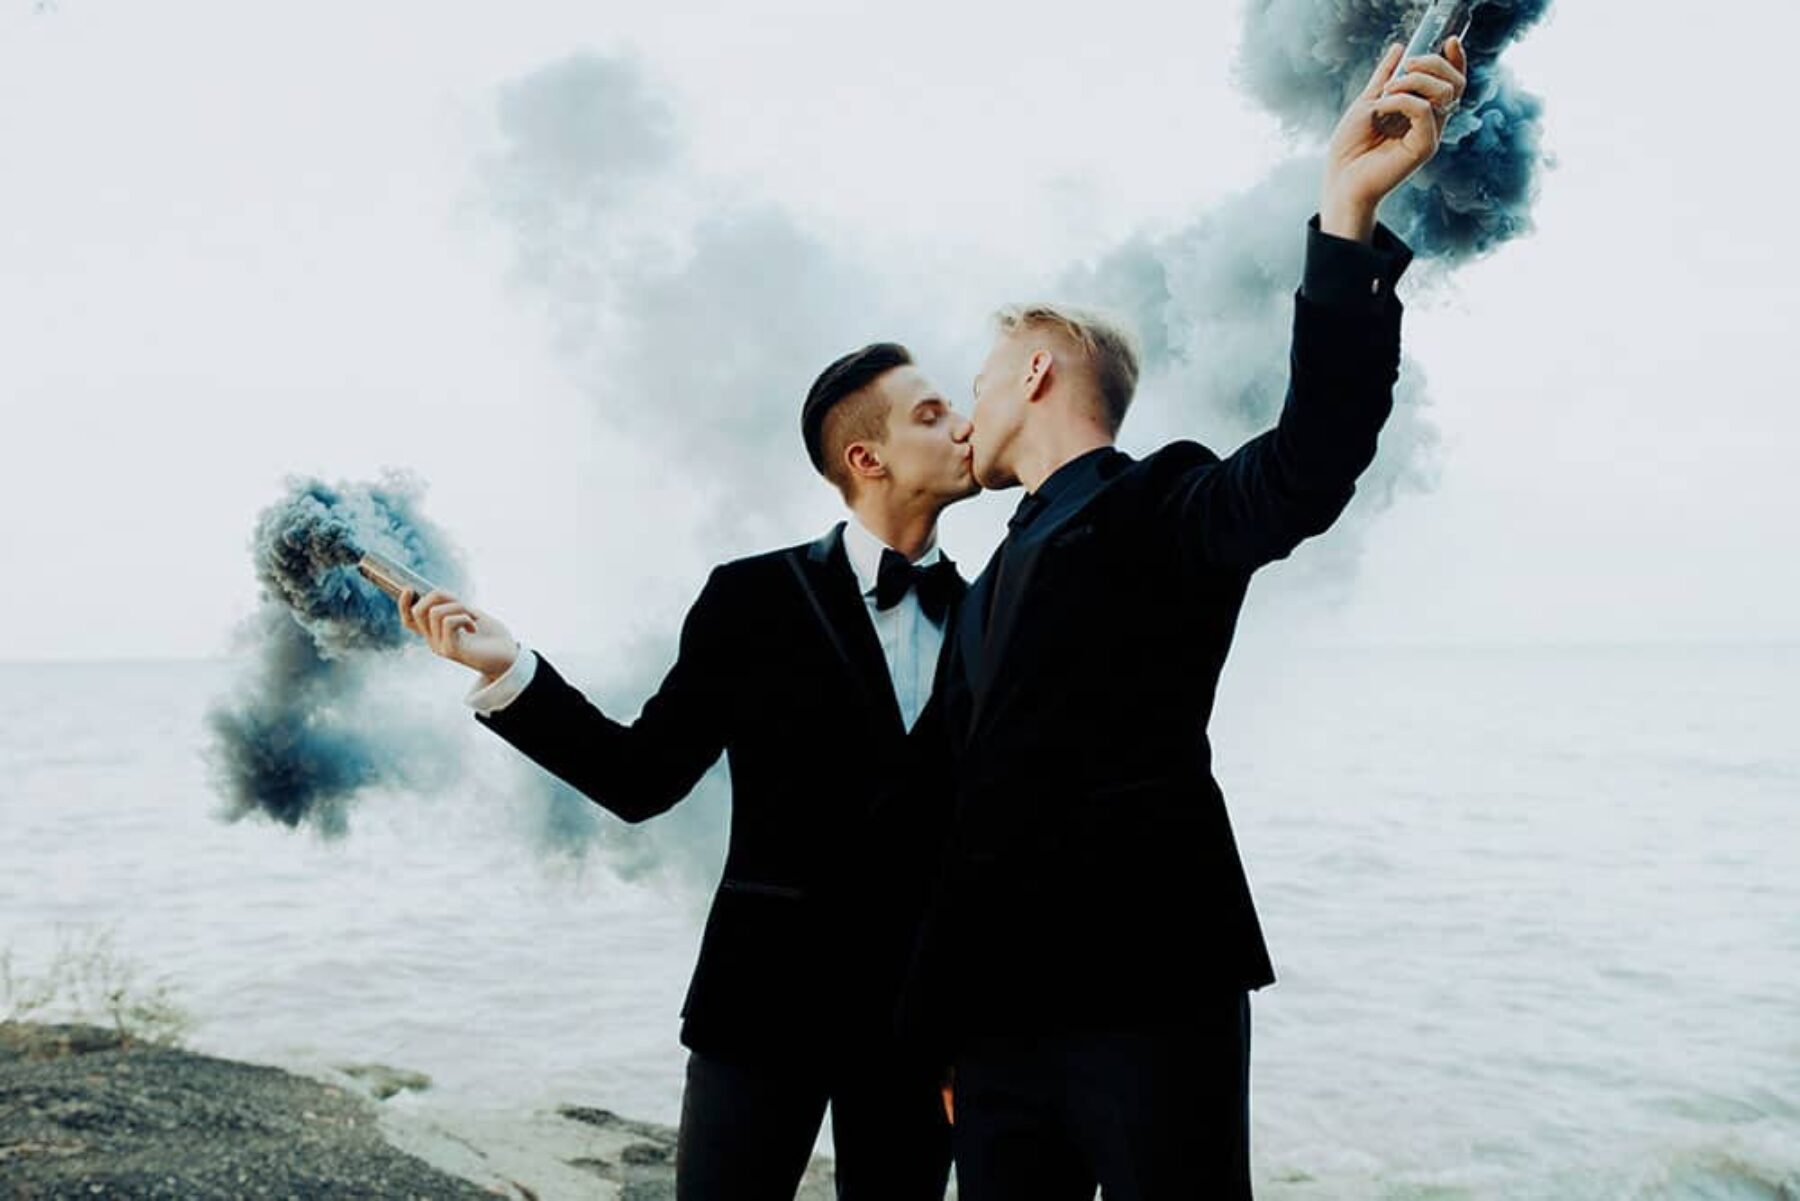 stylish gay wedding with smoke bombs